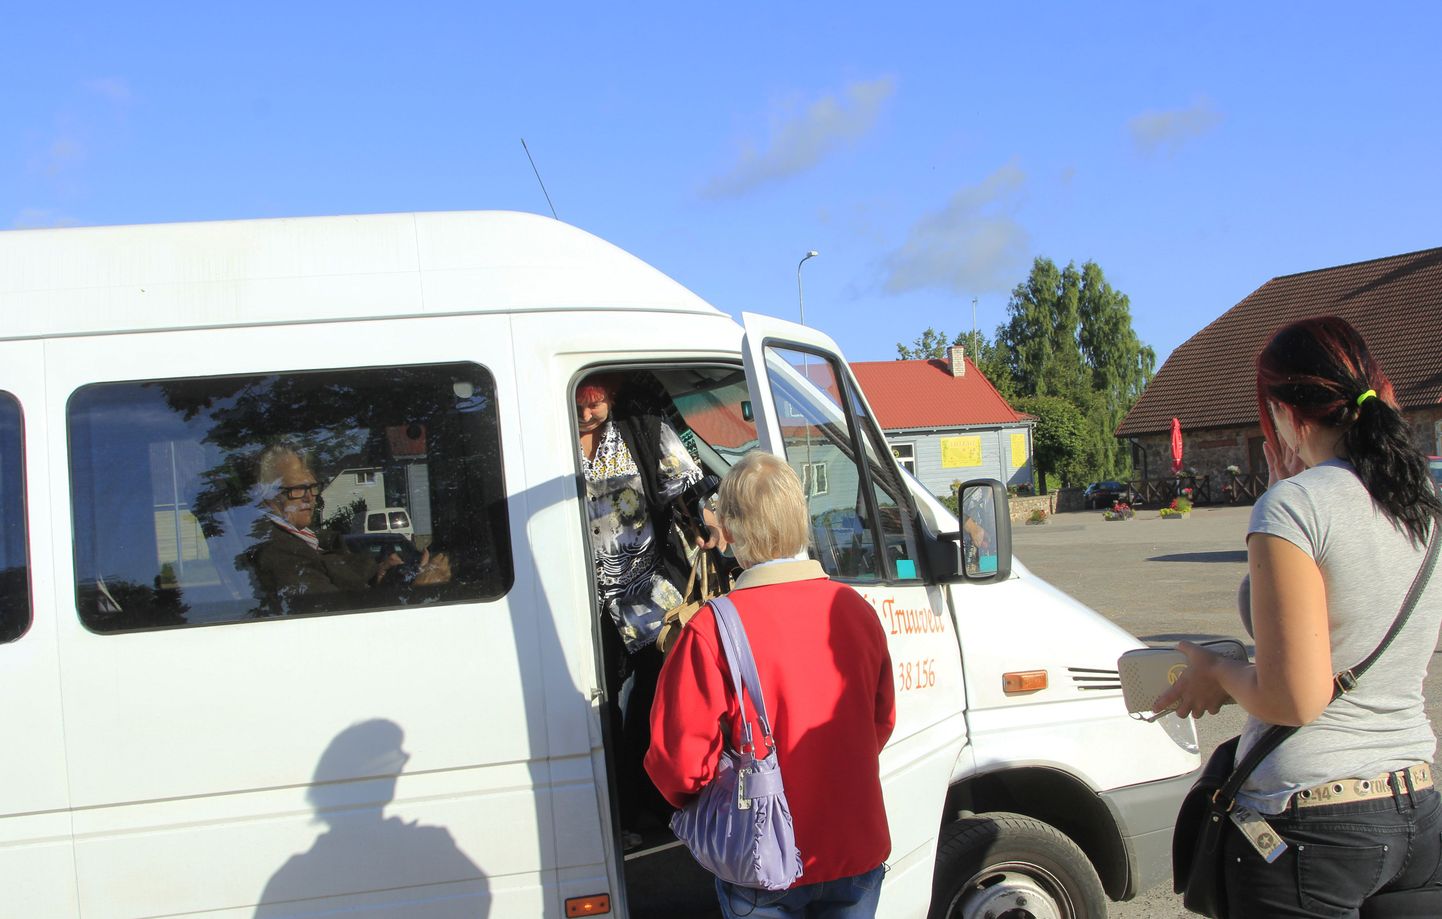 Tõrvast Tartusse saab sõita nii kaug-, era- kui maavalitsuse poolt reguleeritud bussiliinidega. Bussitransporti peavad ühtmoodi oluliseks nii Tartusse arsti juurde sõitvad pensionärid kui õpilased ja tudengid.